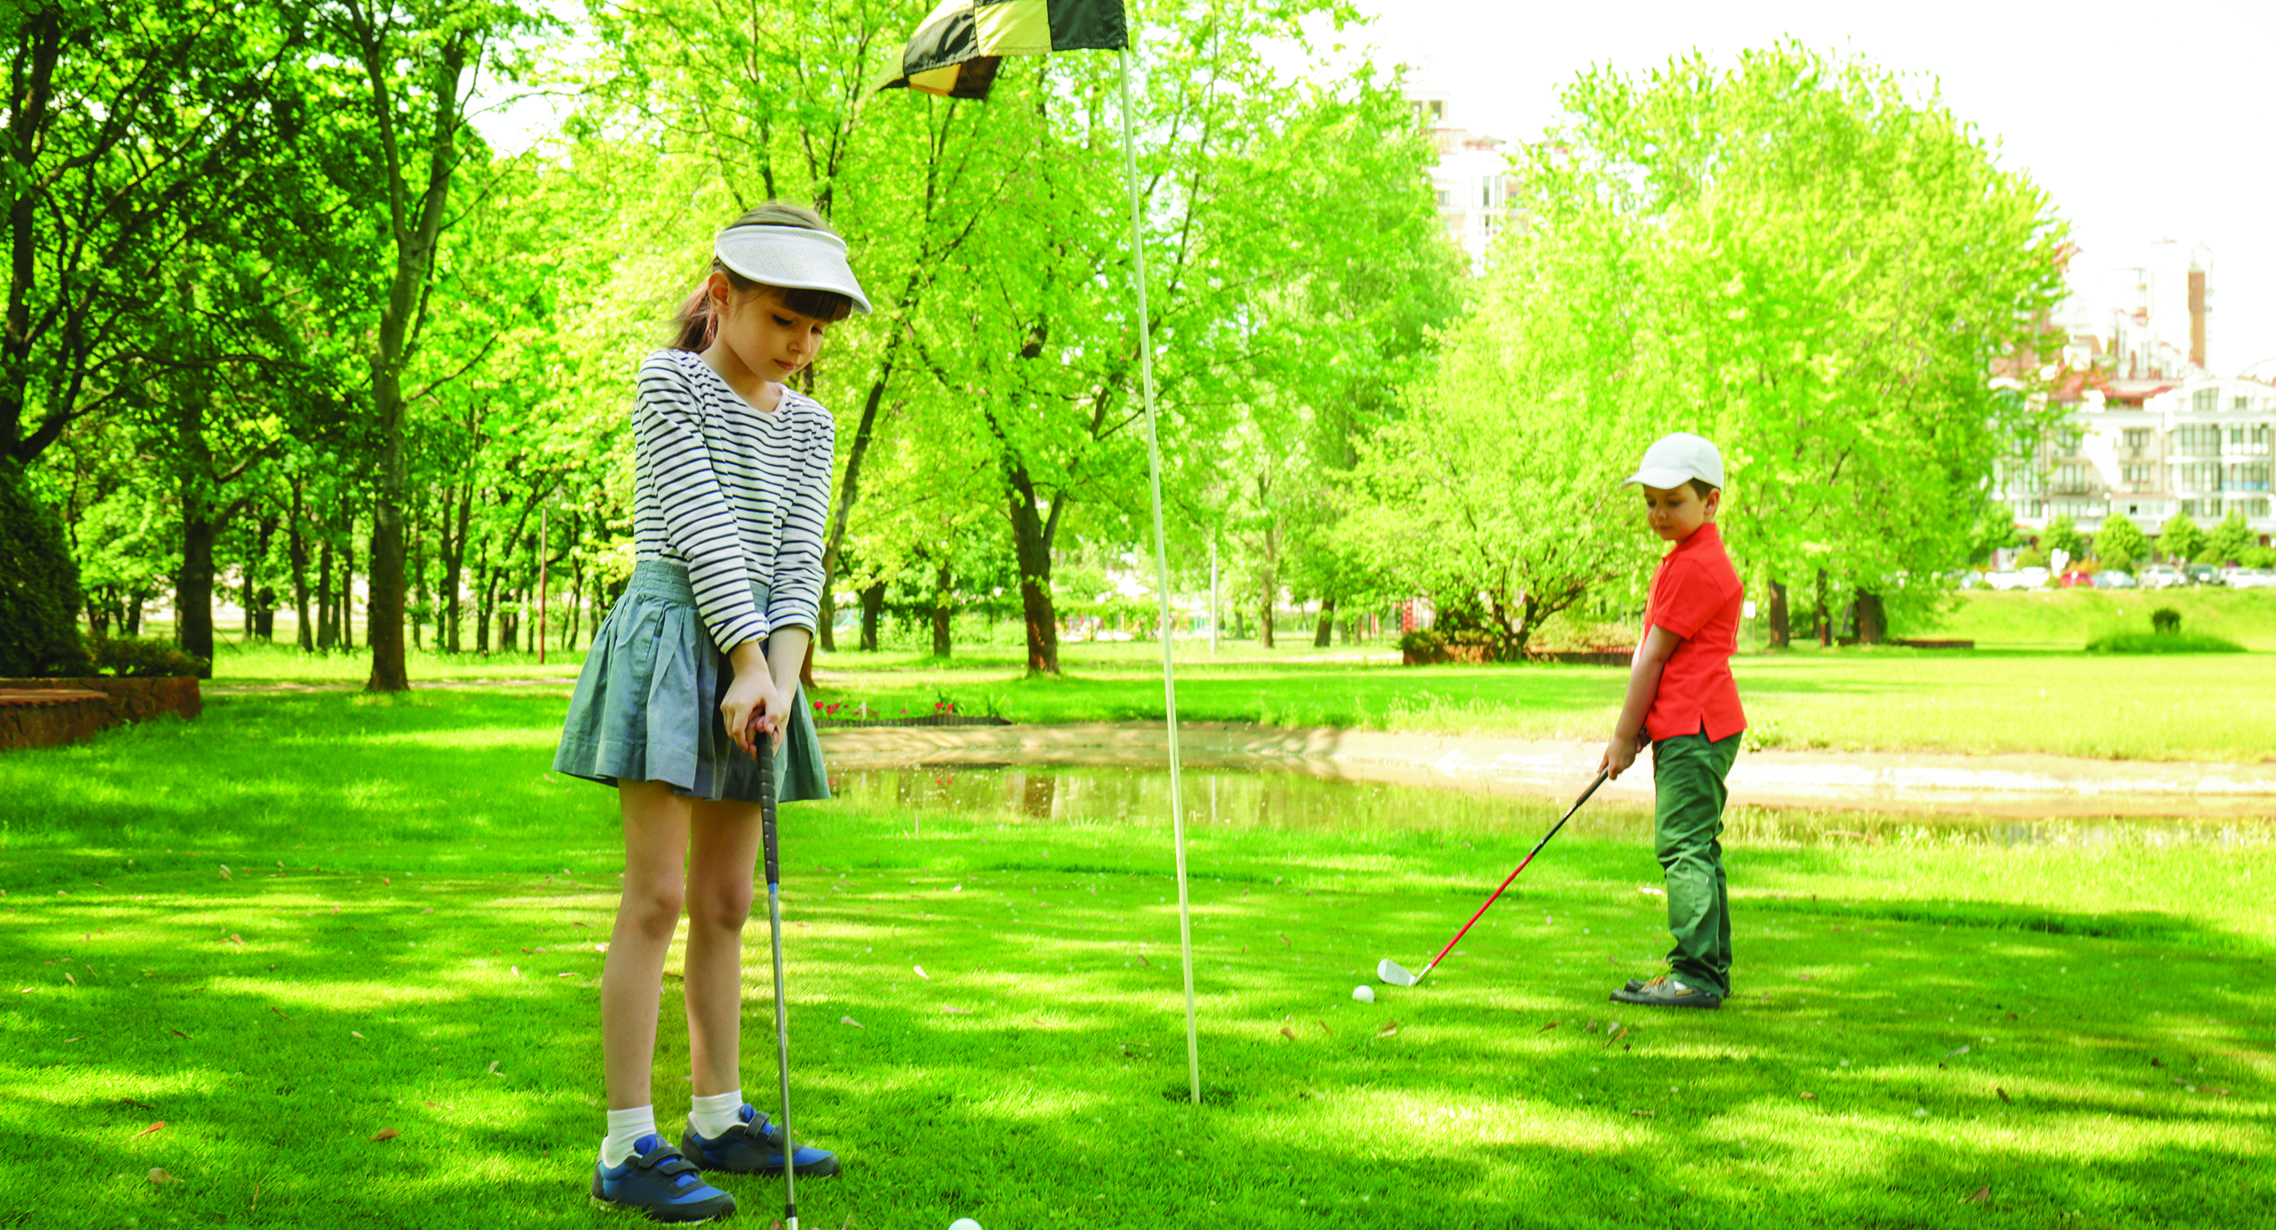 two kids golfing